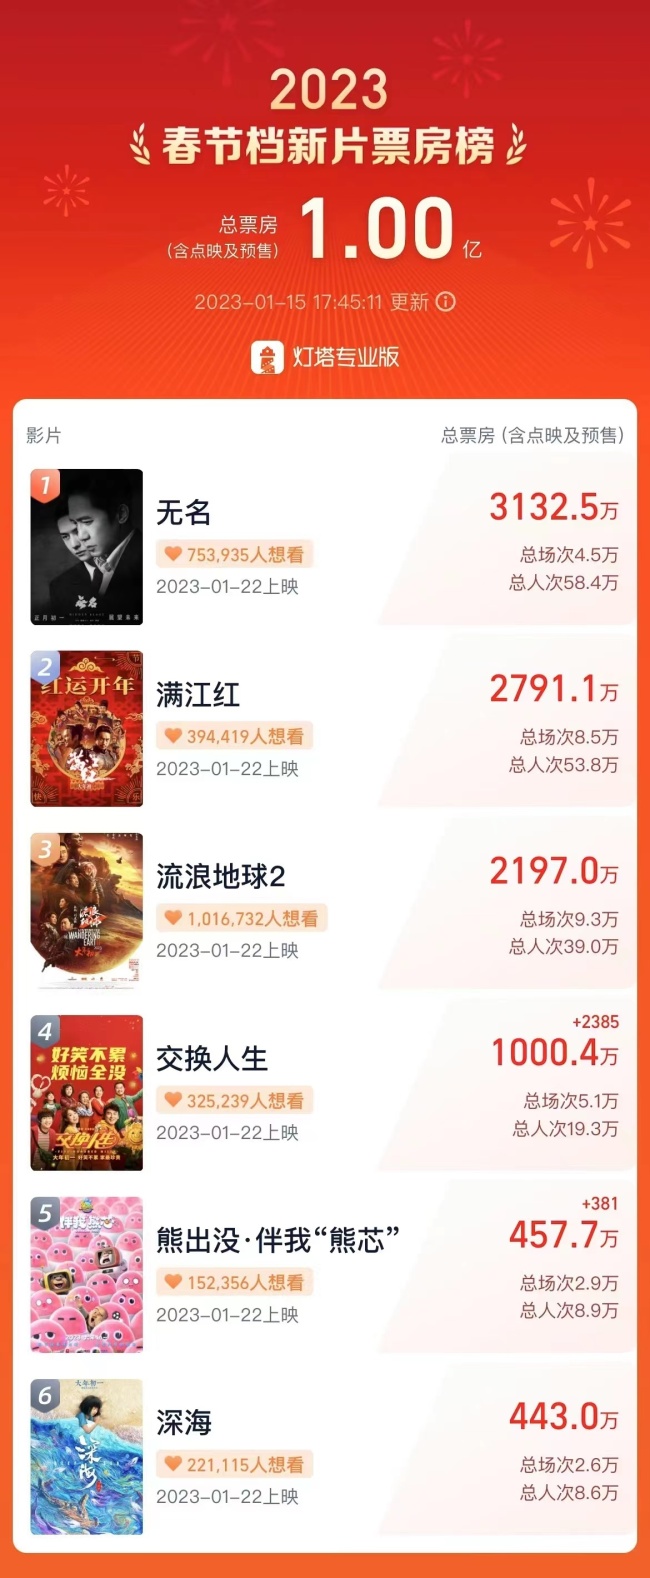 3月7日天津新增3例阳性感染者 - Nuebe Casino Login App - Casino 百度热点快讯